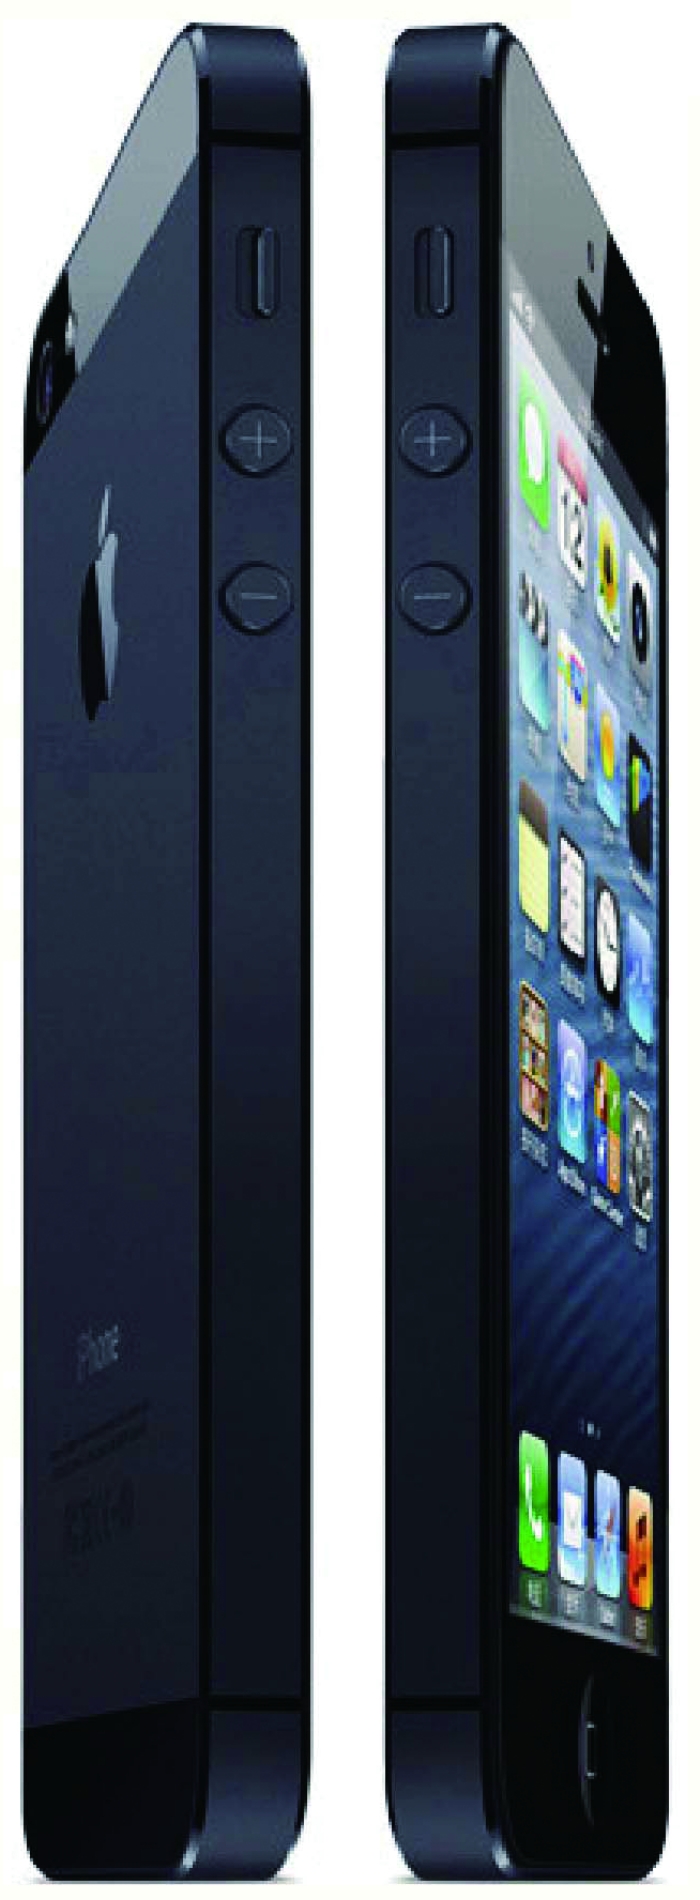 电信iPhone5 12月上市11月20日起全面接受预订(组图)-搜狐滚动